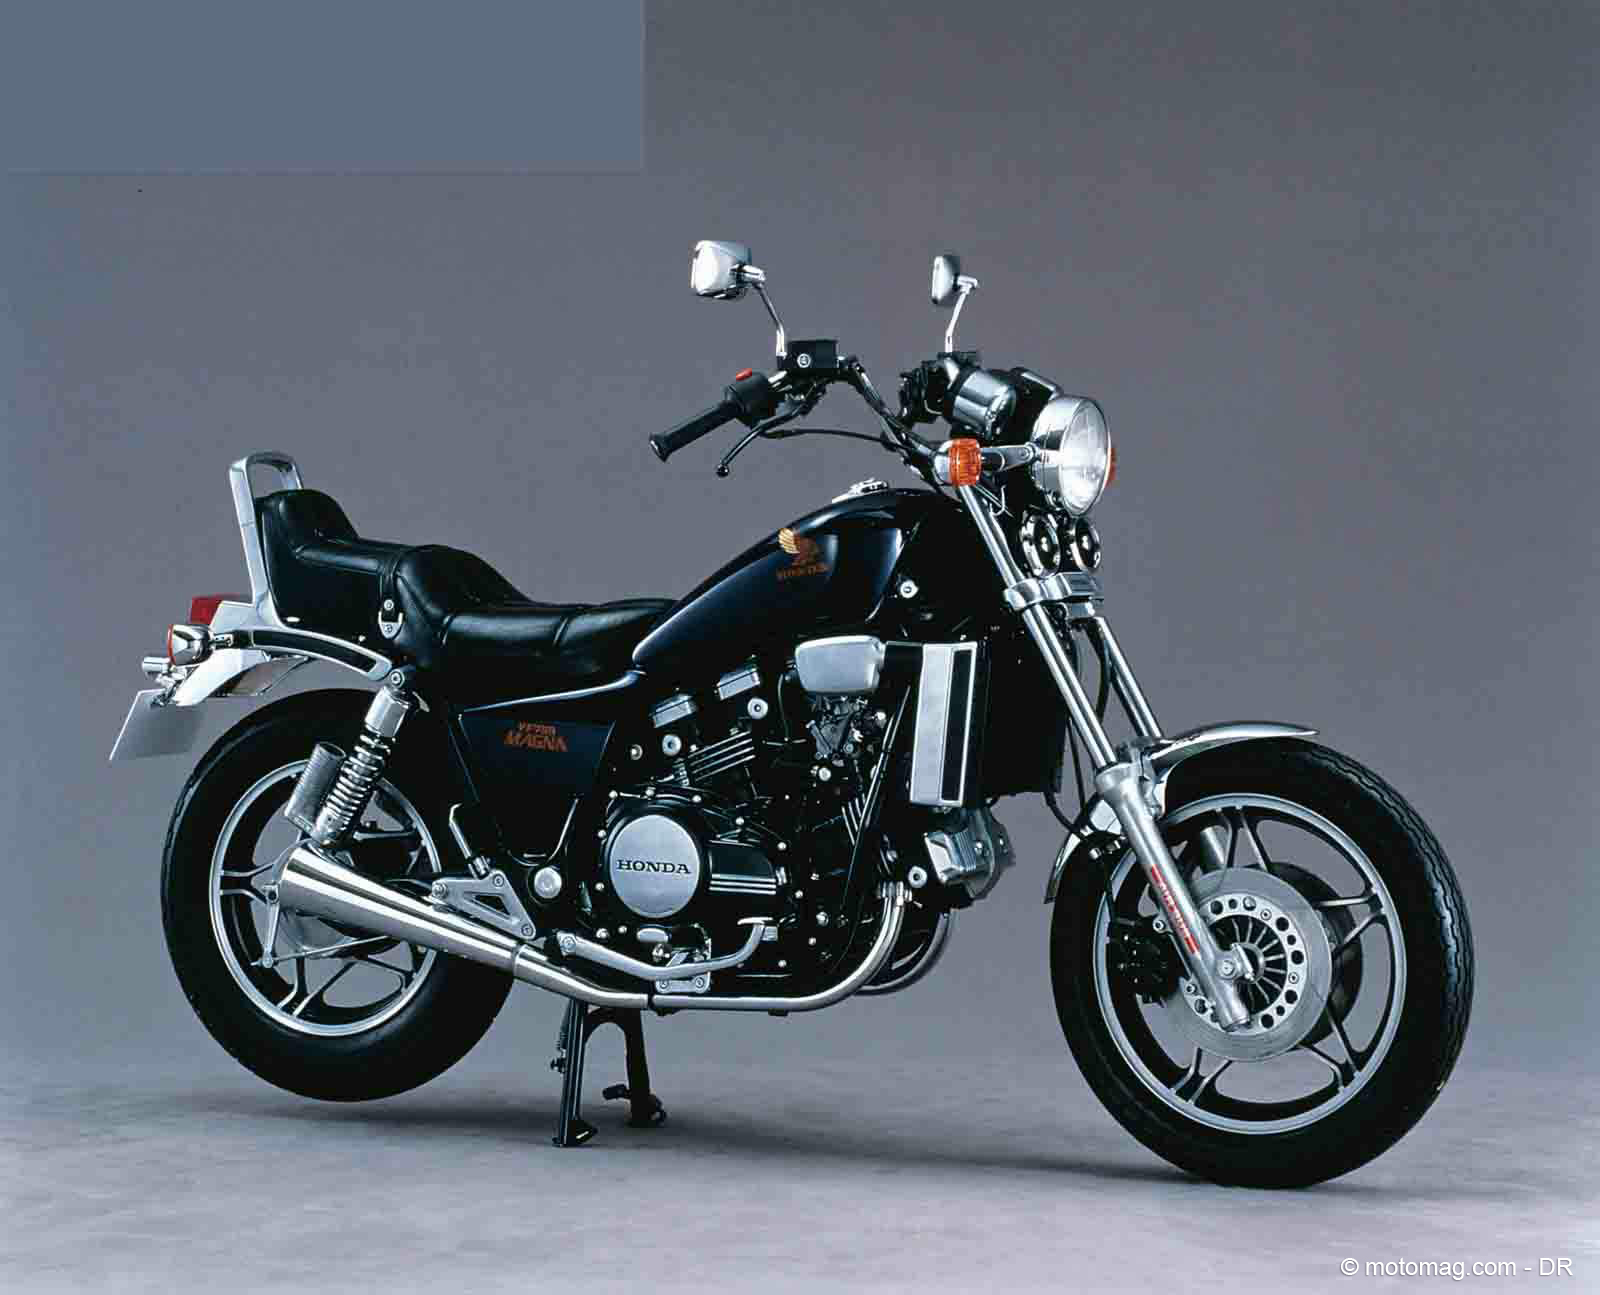 Культовый мотоцикл honda magna - все о мото